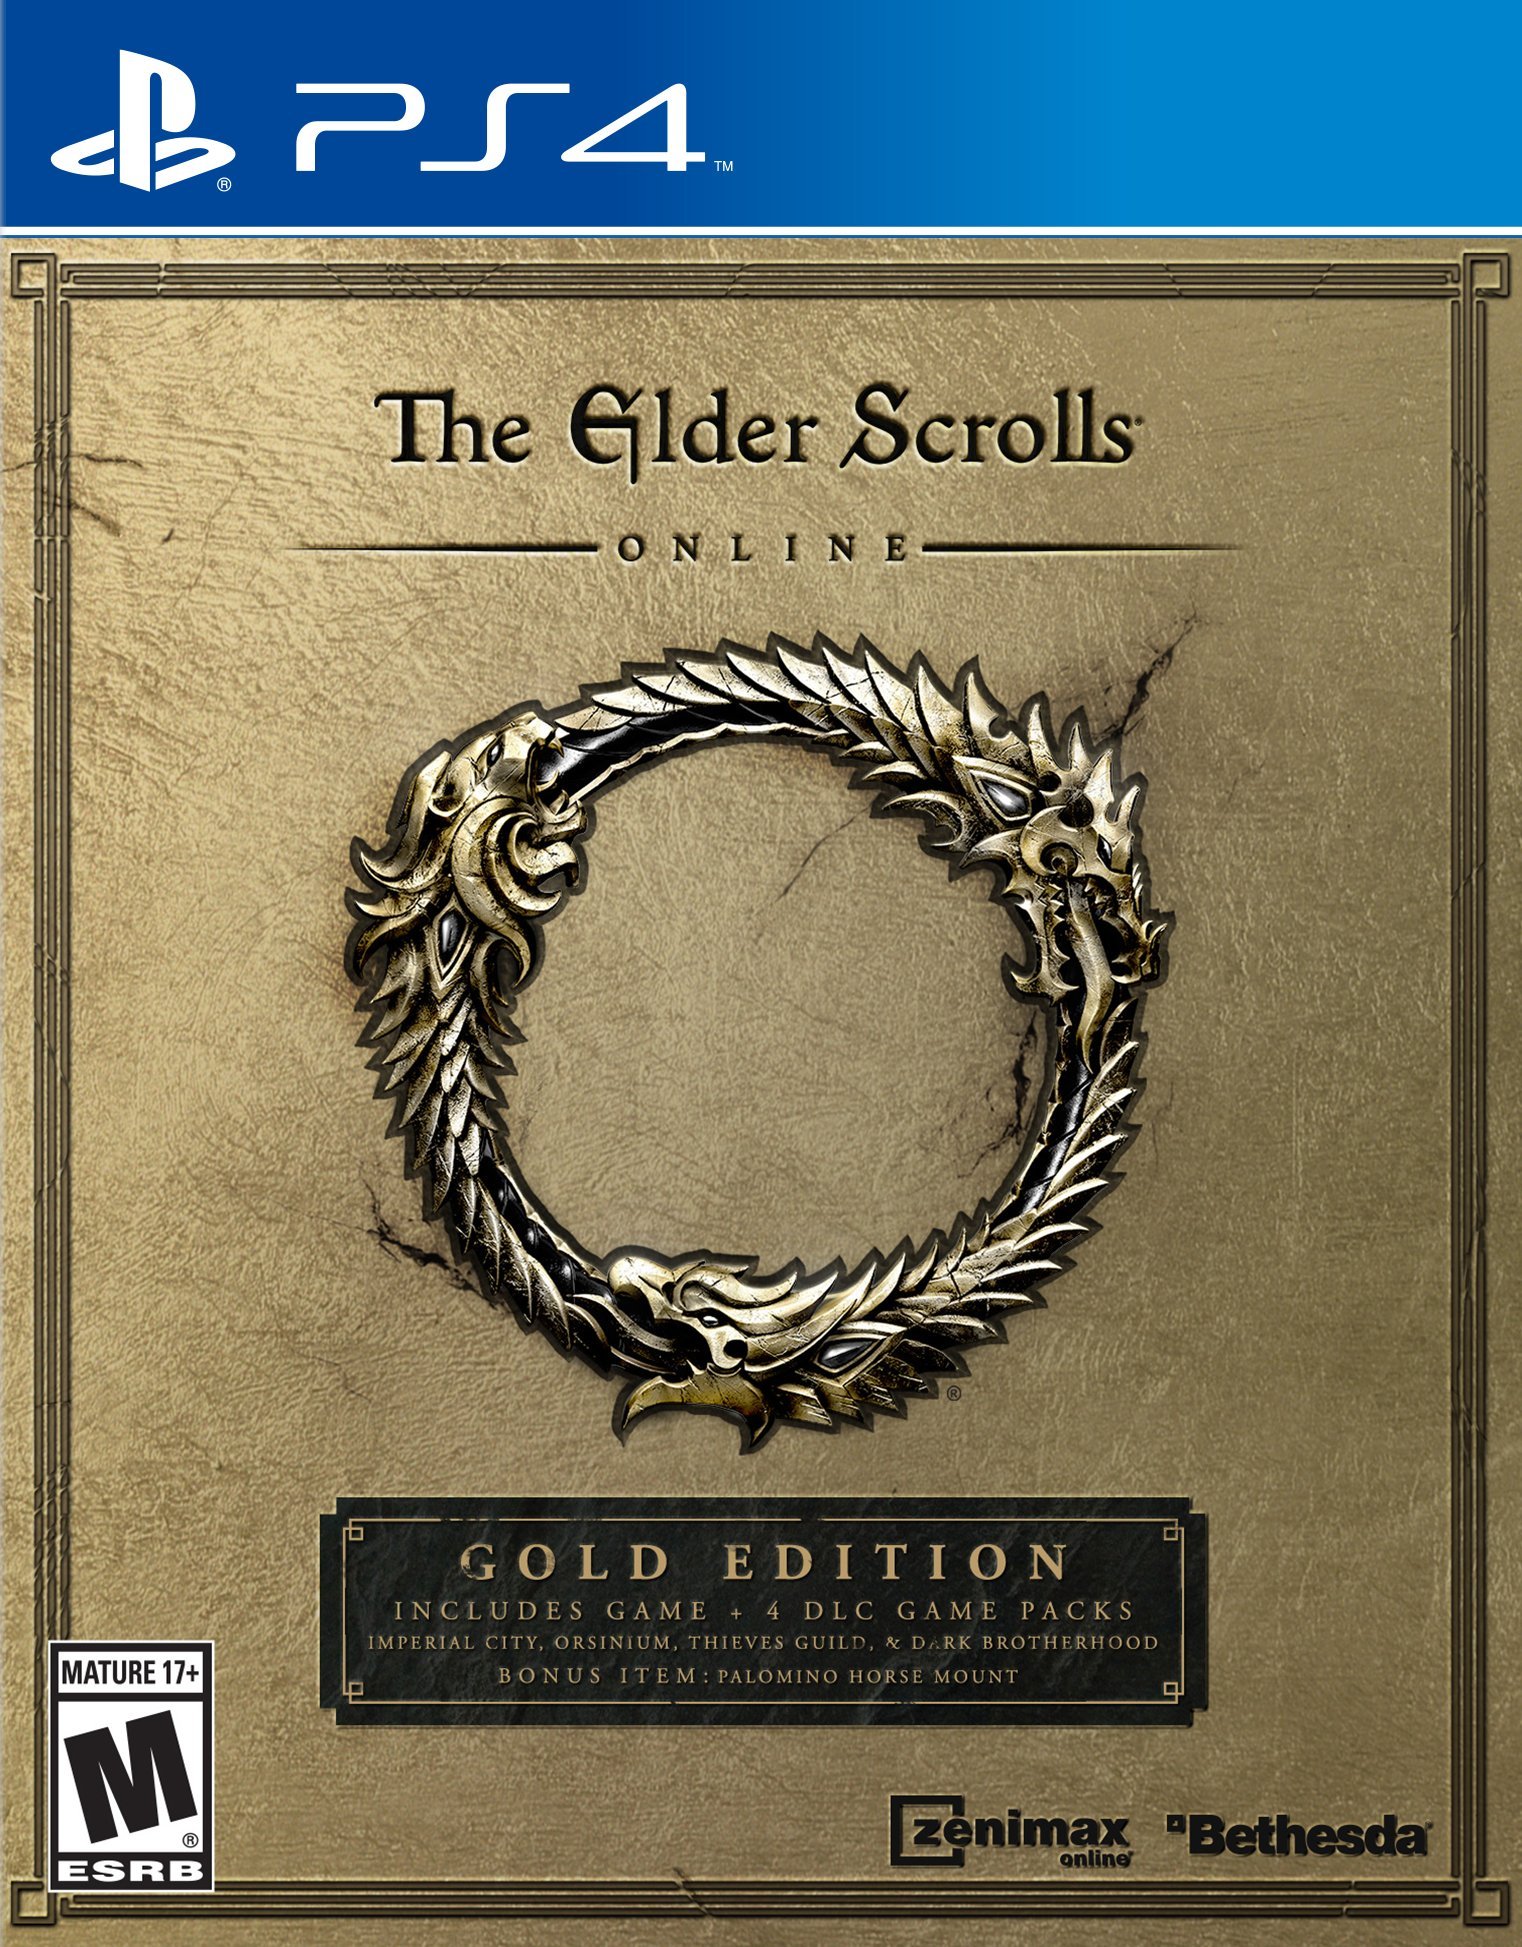 The elder scrolls online pc release date